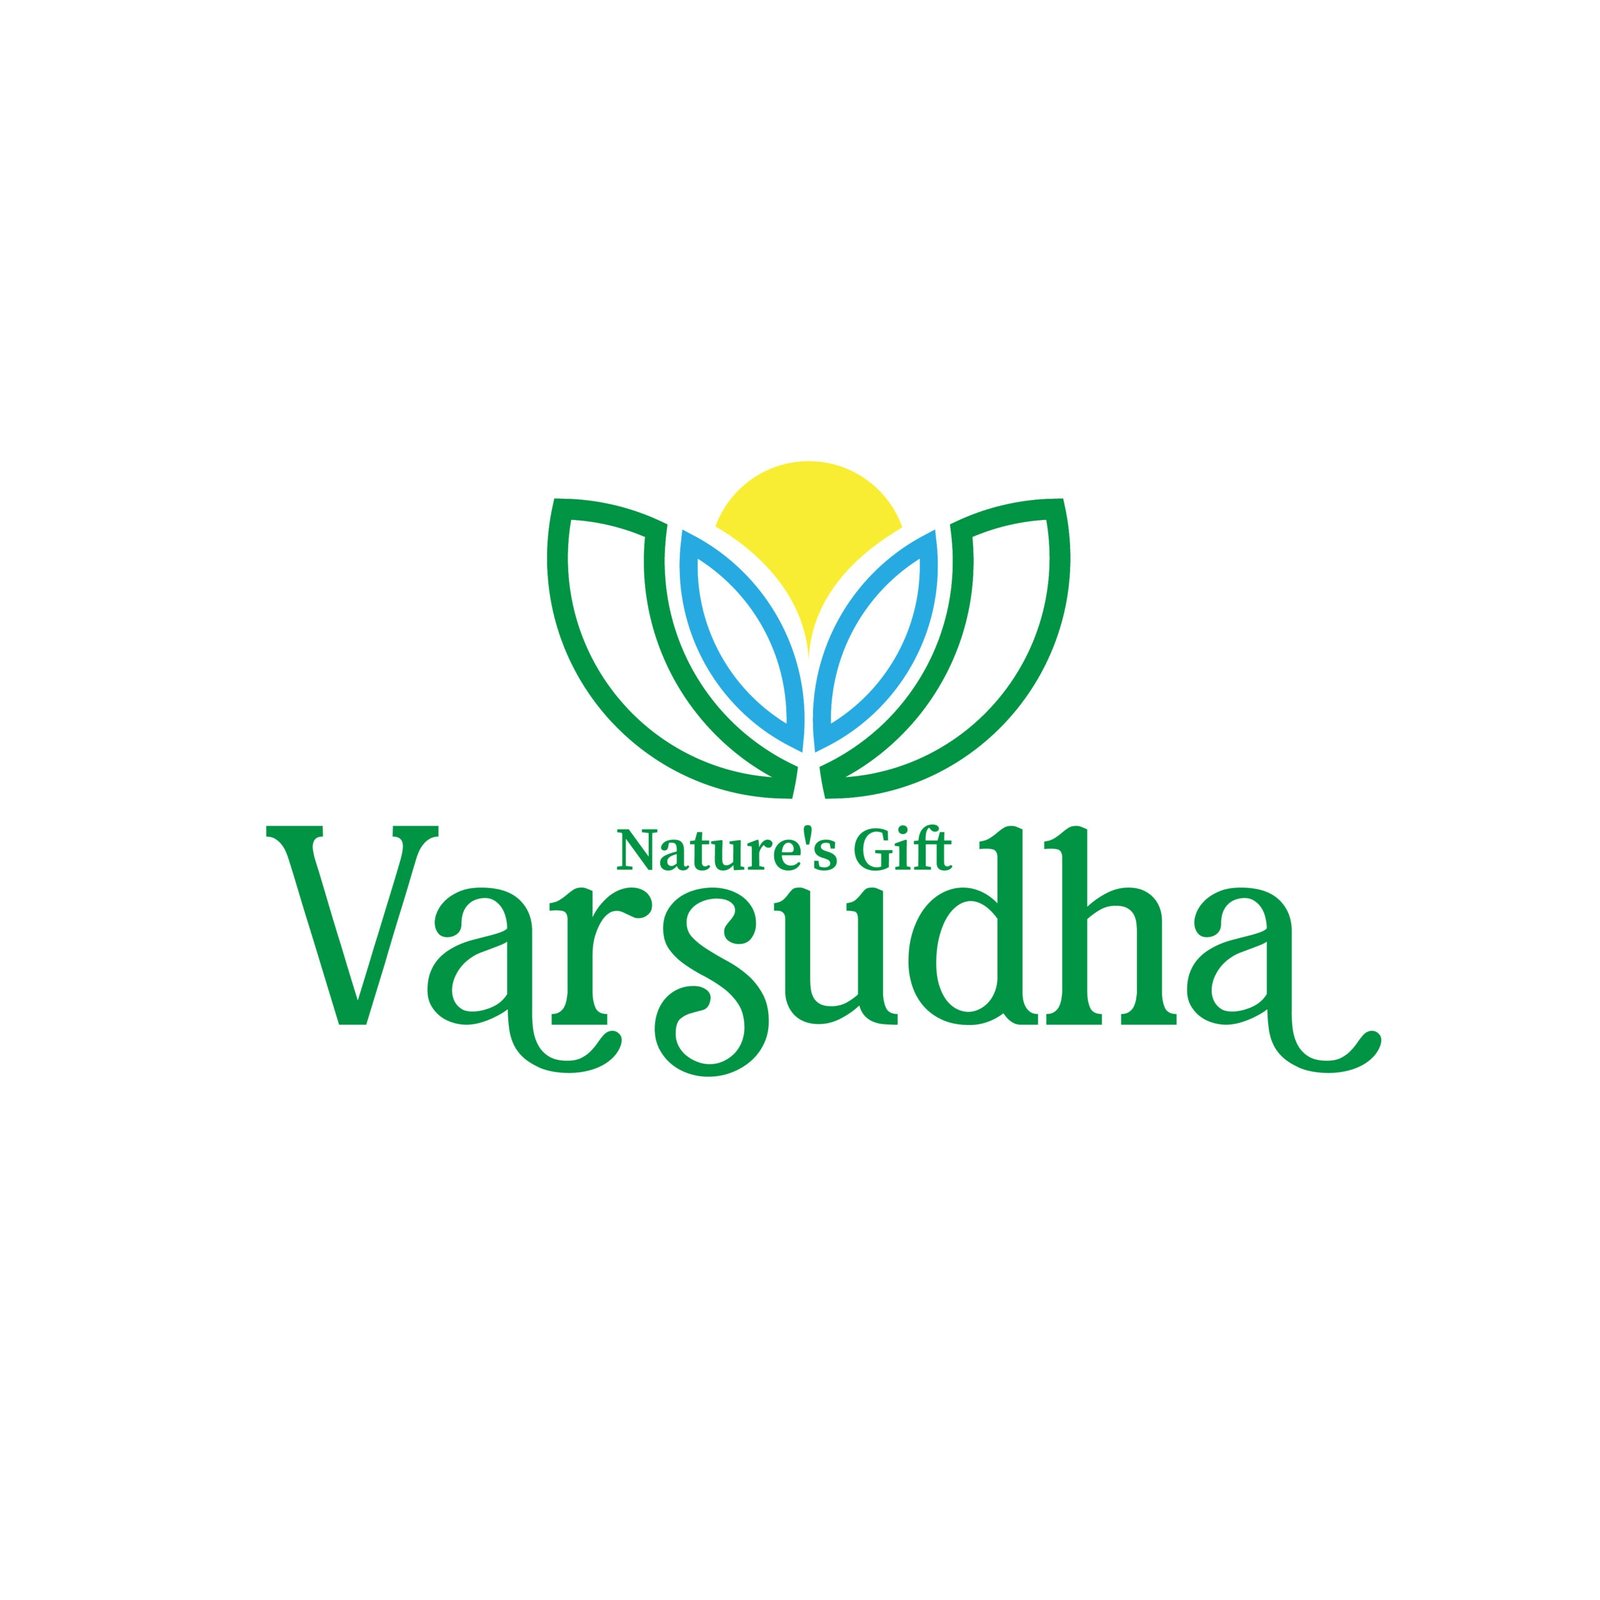 Varsudha